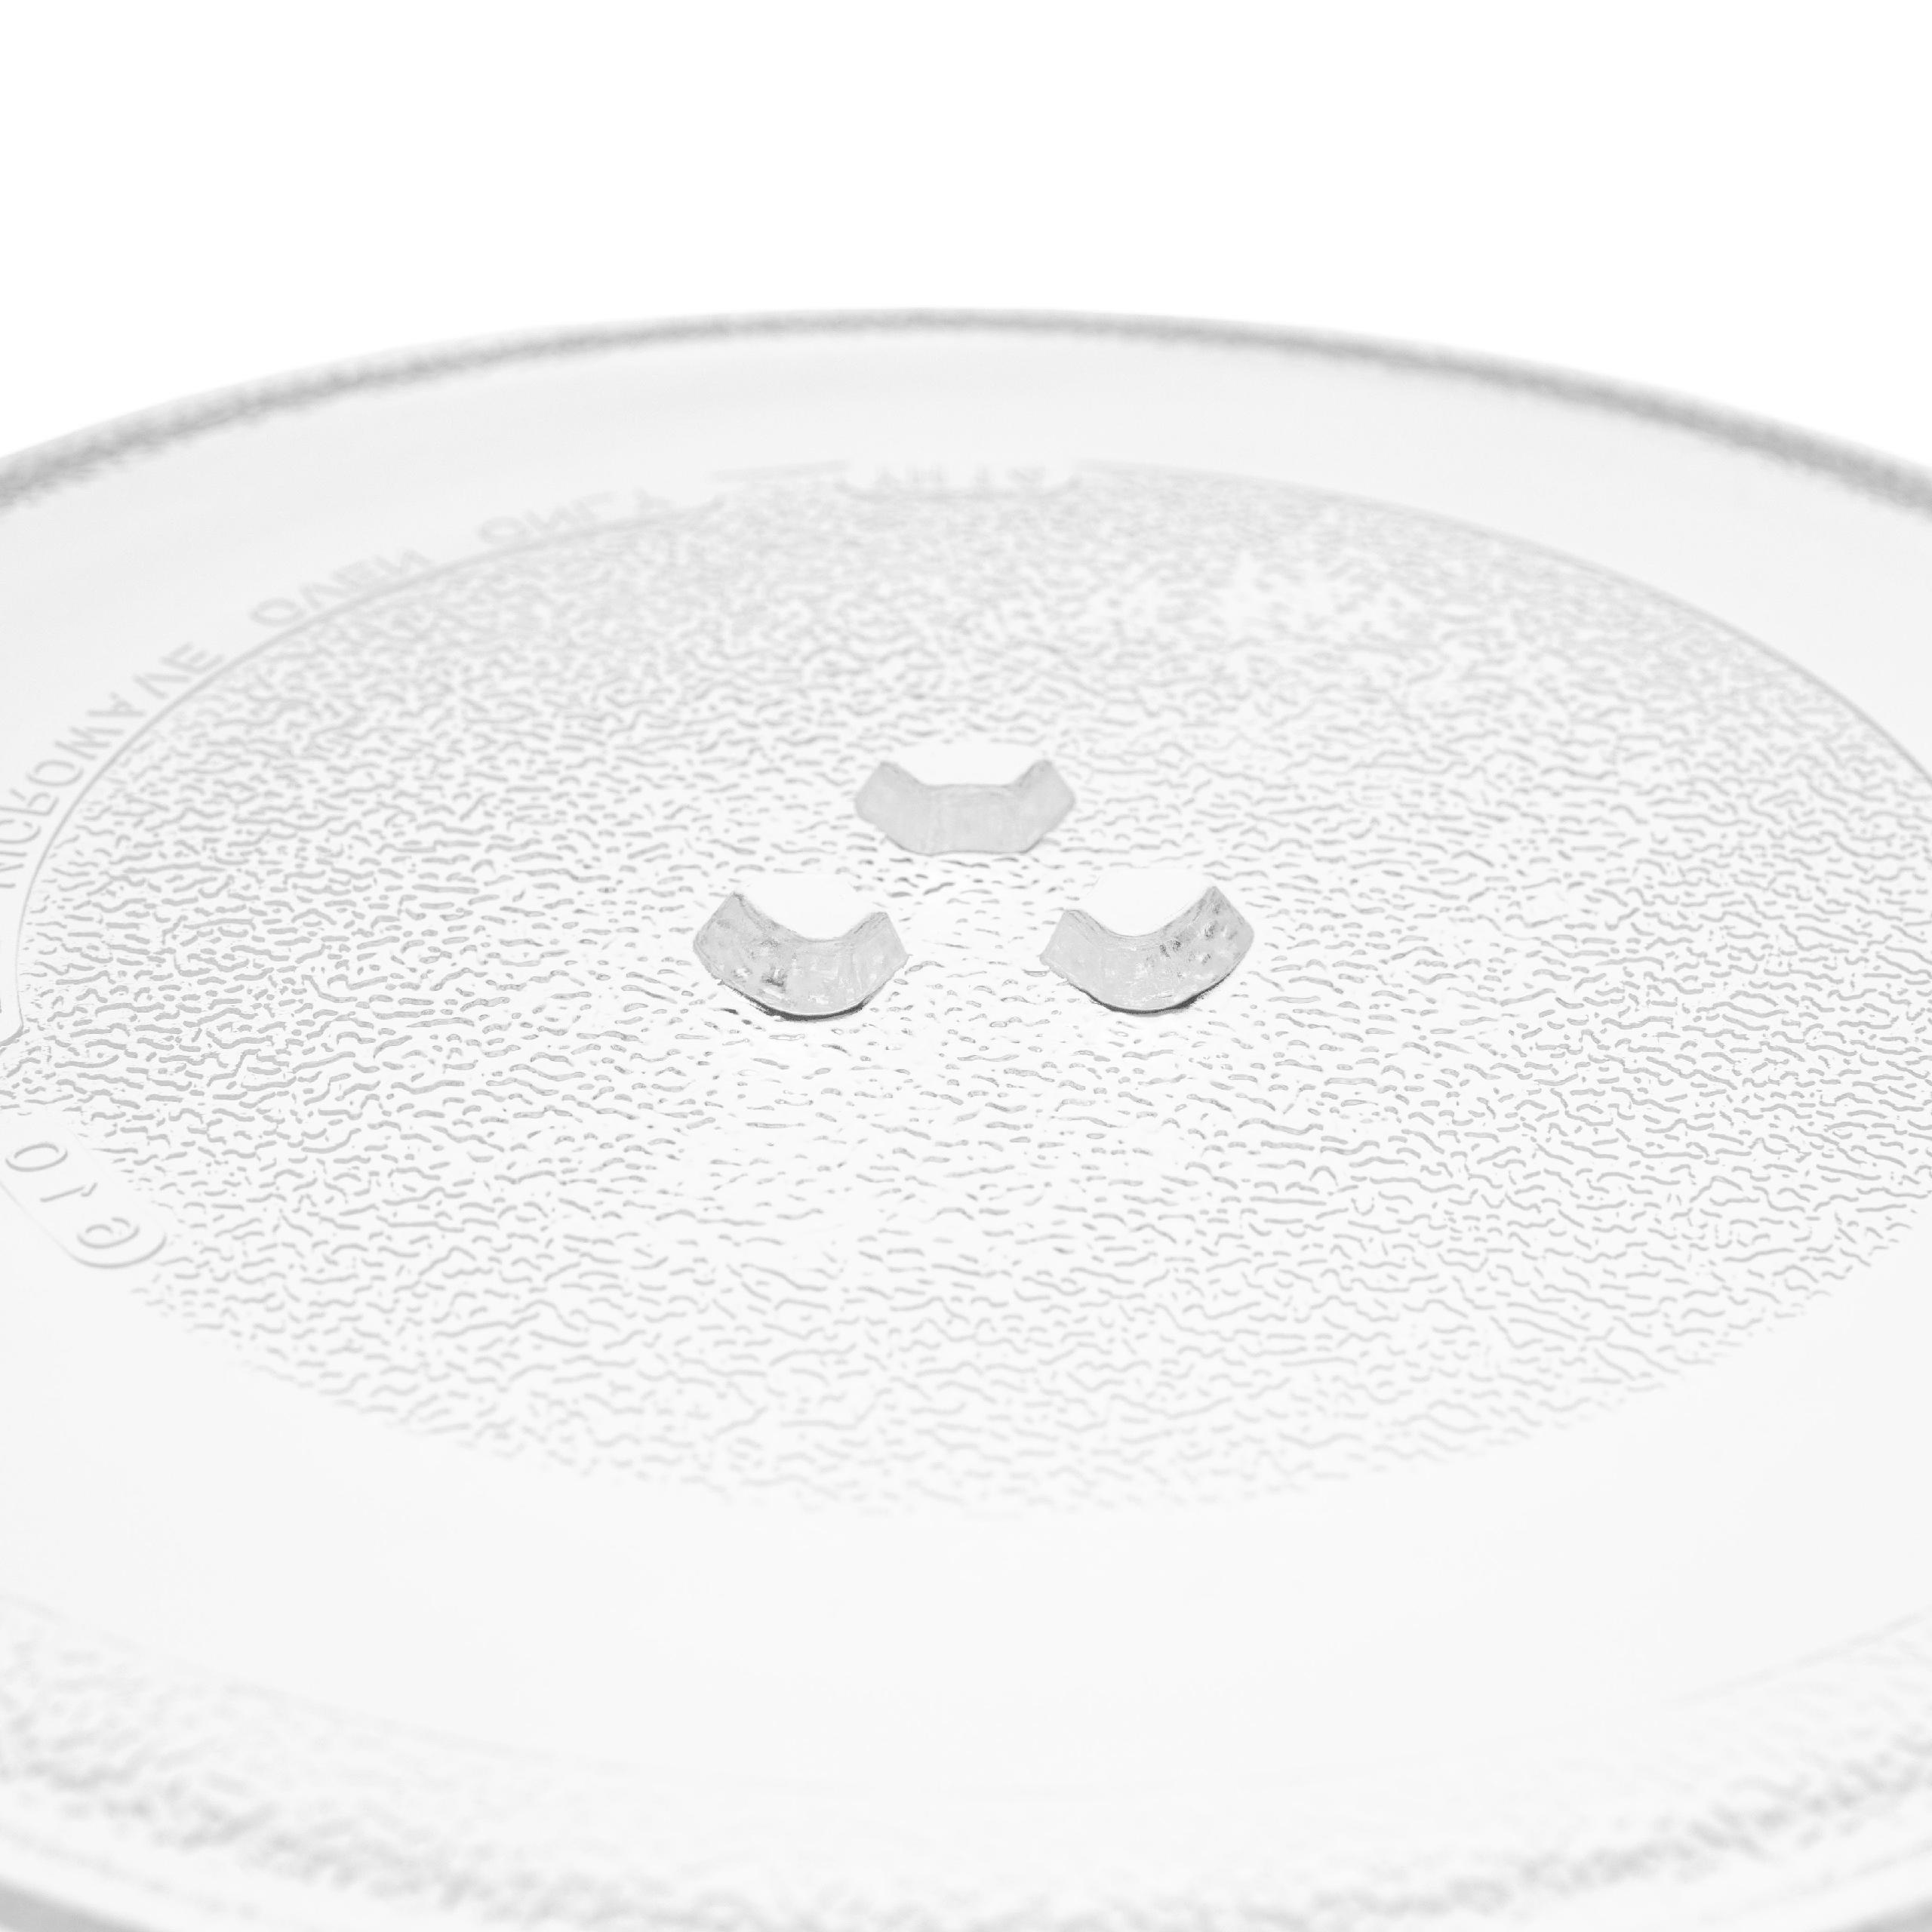 Szklany talerz do mikrofali Hanseatic zamiennik Bosch 11002491 - talerz obrotowy 25,5 cm